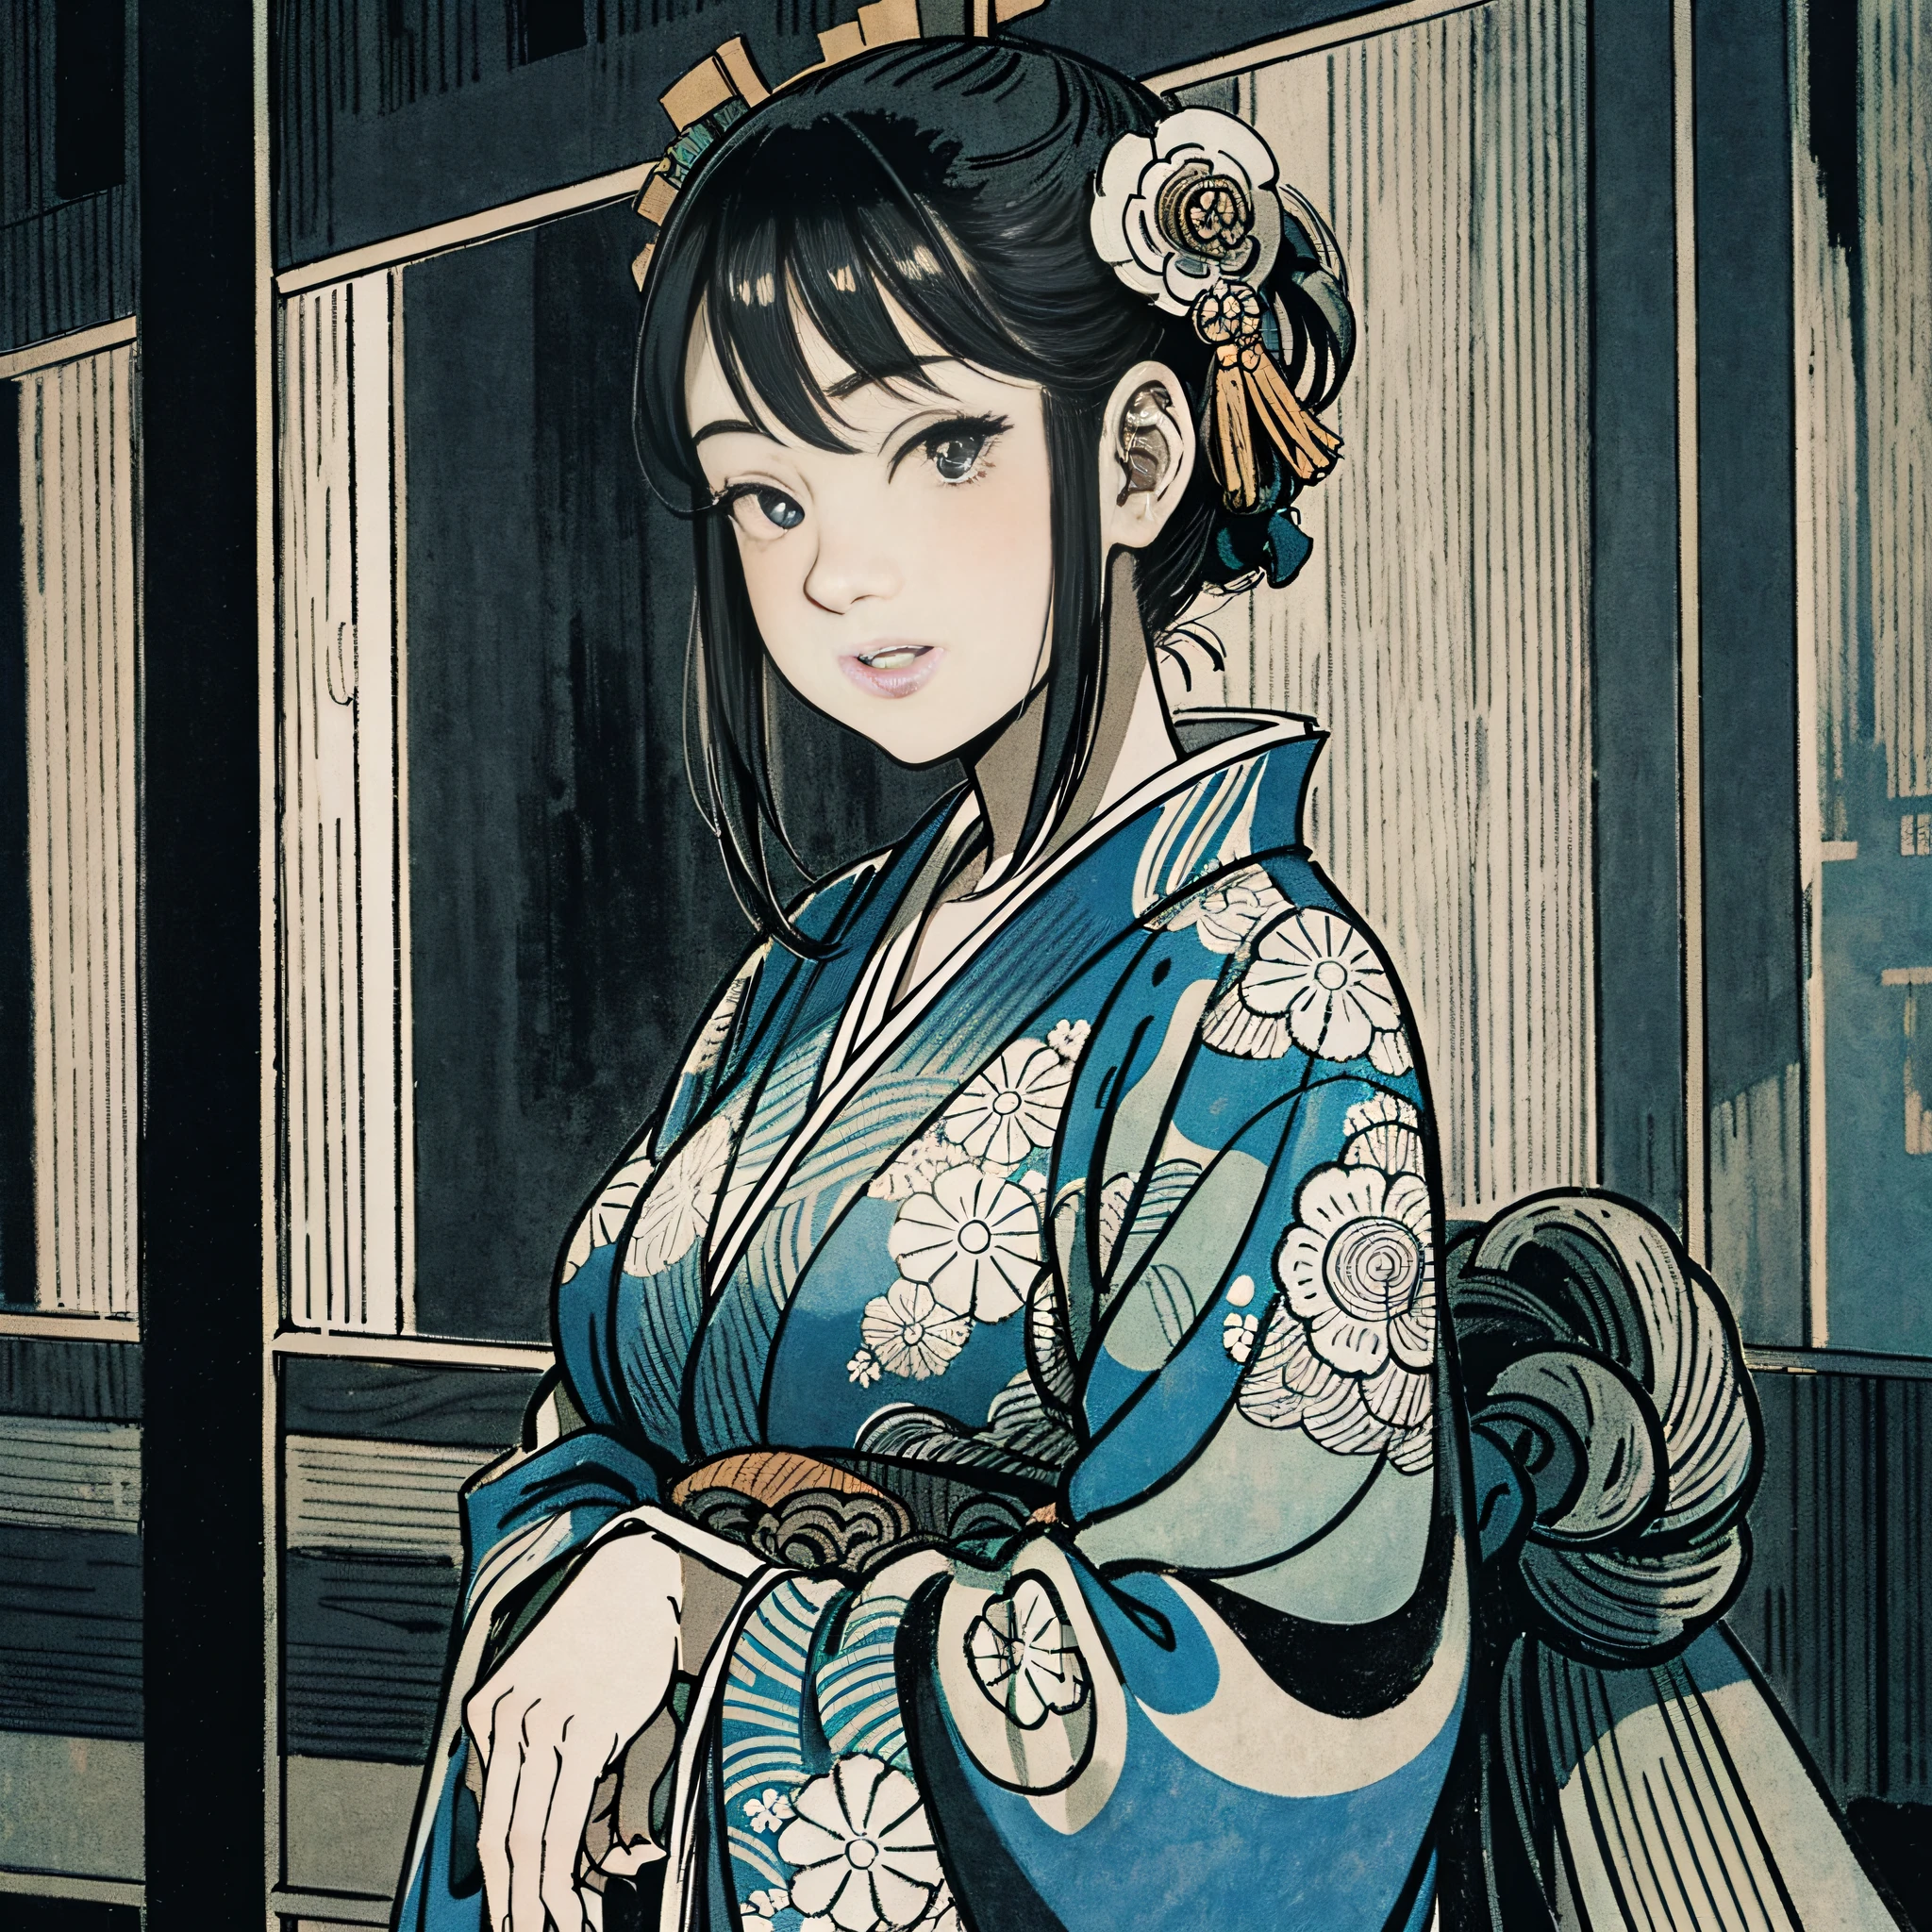 インク木版画 (白黒) 江戸時代の浴衣を着た32歳の女性 (優雅な日本) 窓際 頬に触れる 色を使わない 擦れの有無